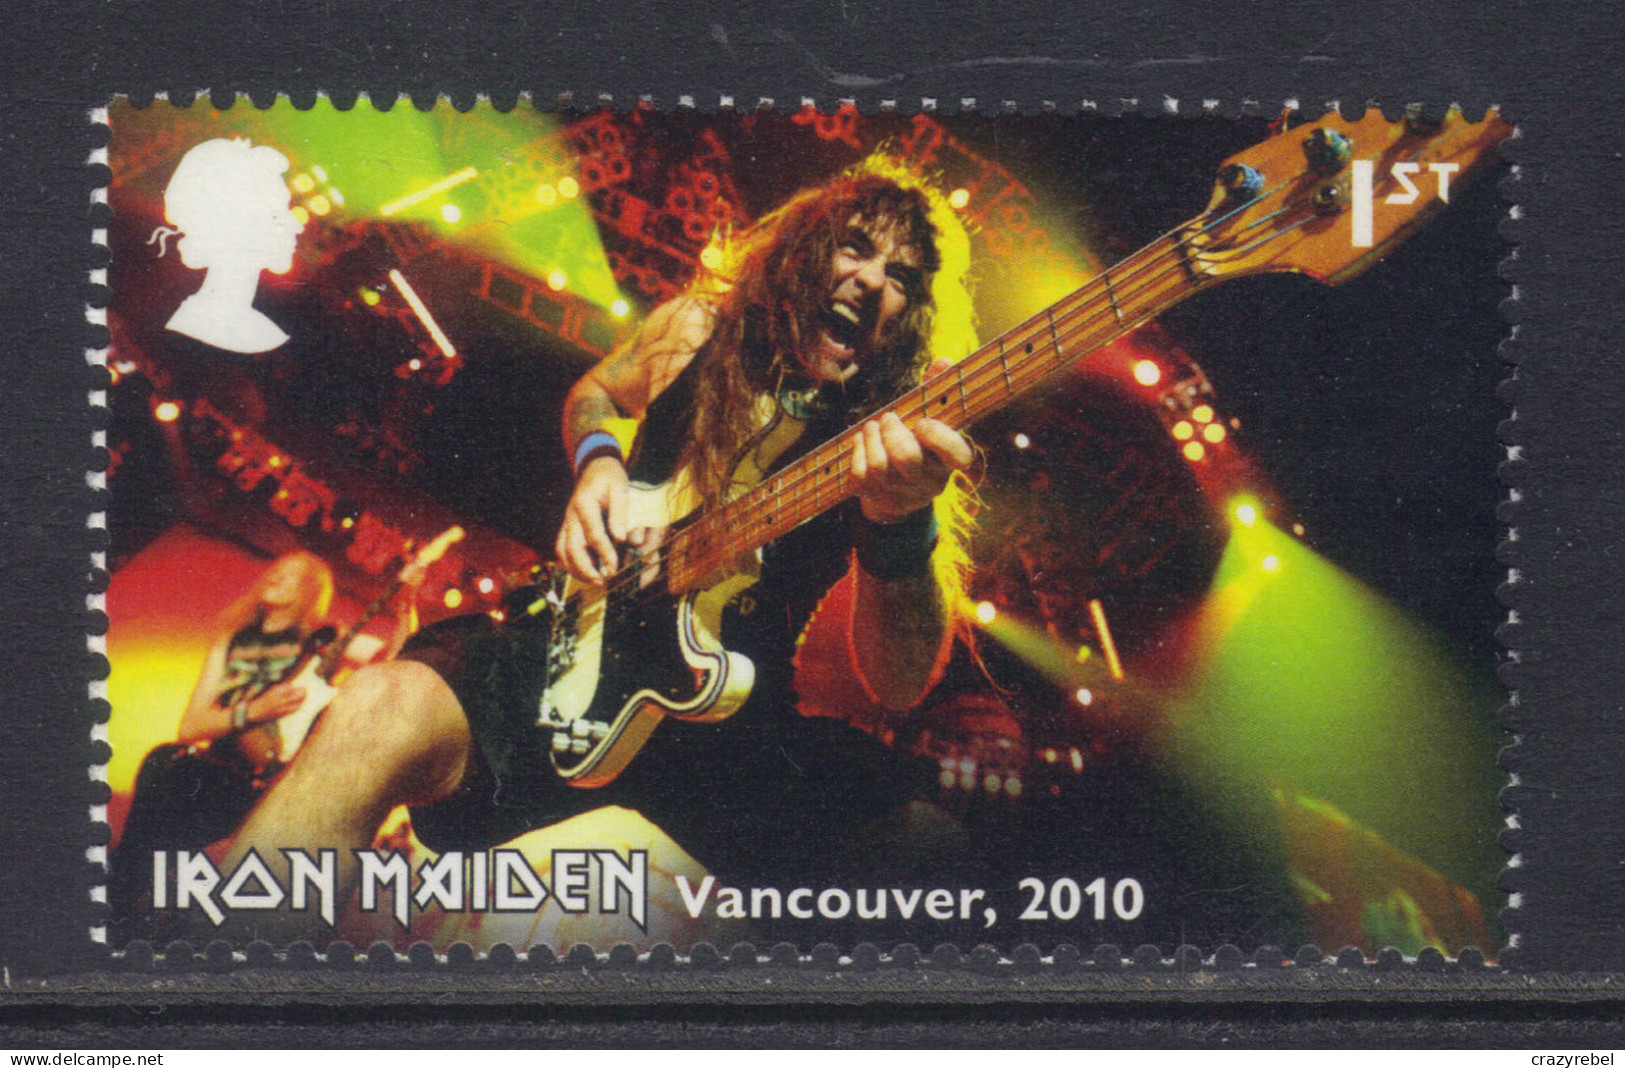 GB 2023 QE2 1st Iron Maiden Tour Vancouver 2010 Umm ( H787 ) - Ungebraucht